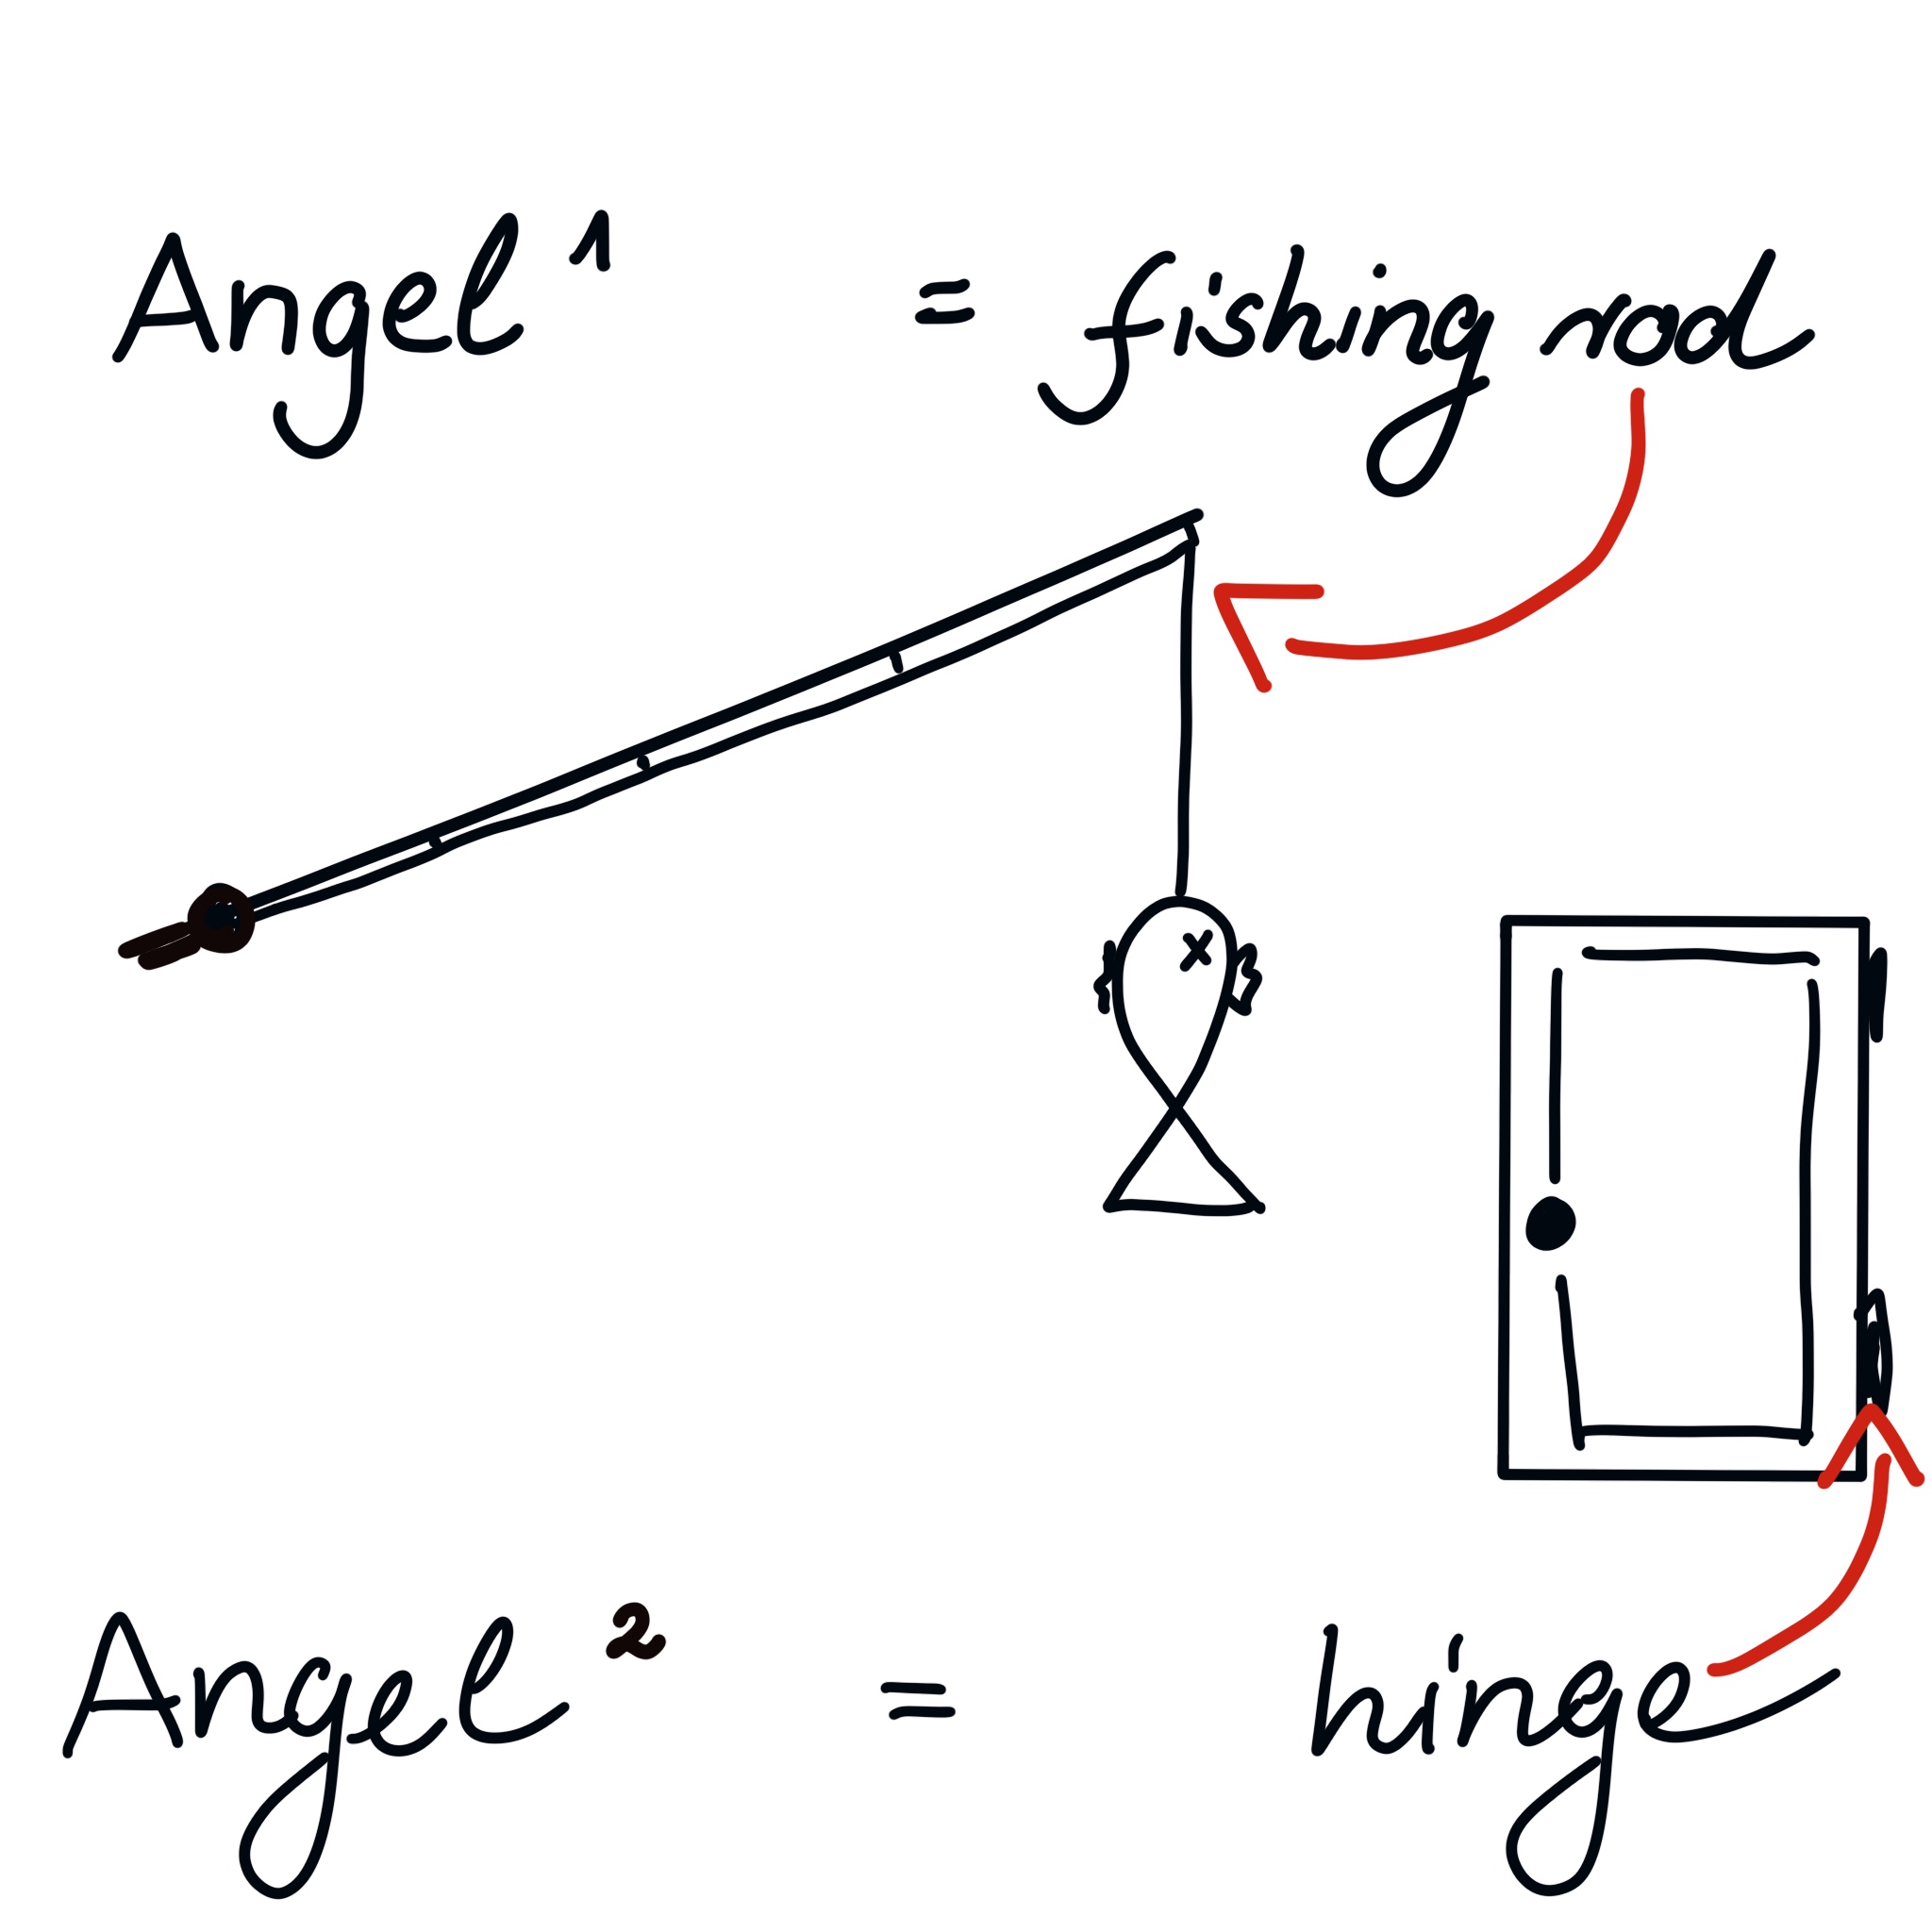 zwei Bedeutungen des deutschen Wortes Angel: fishing-rod und hinge